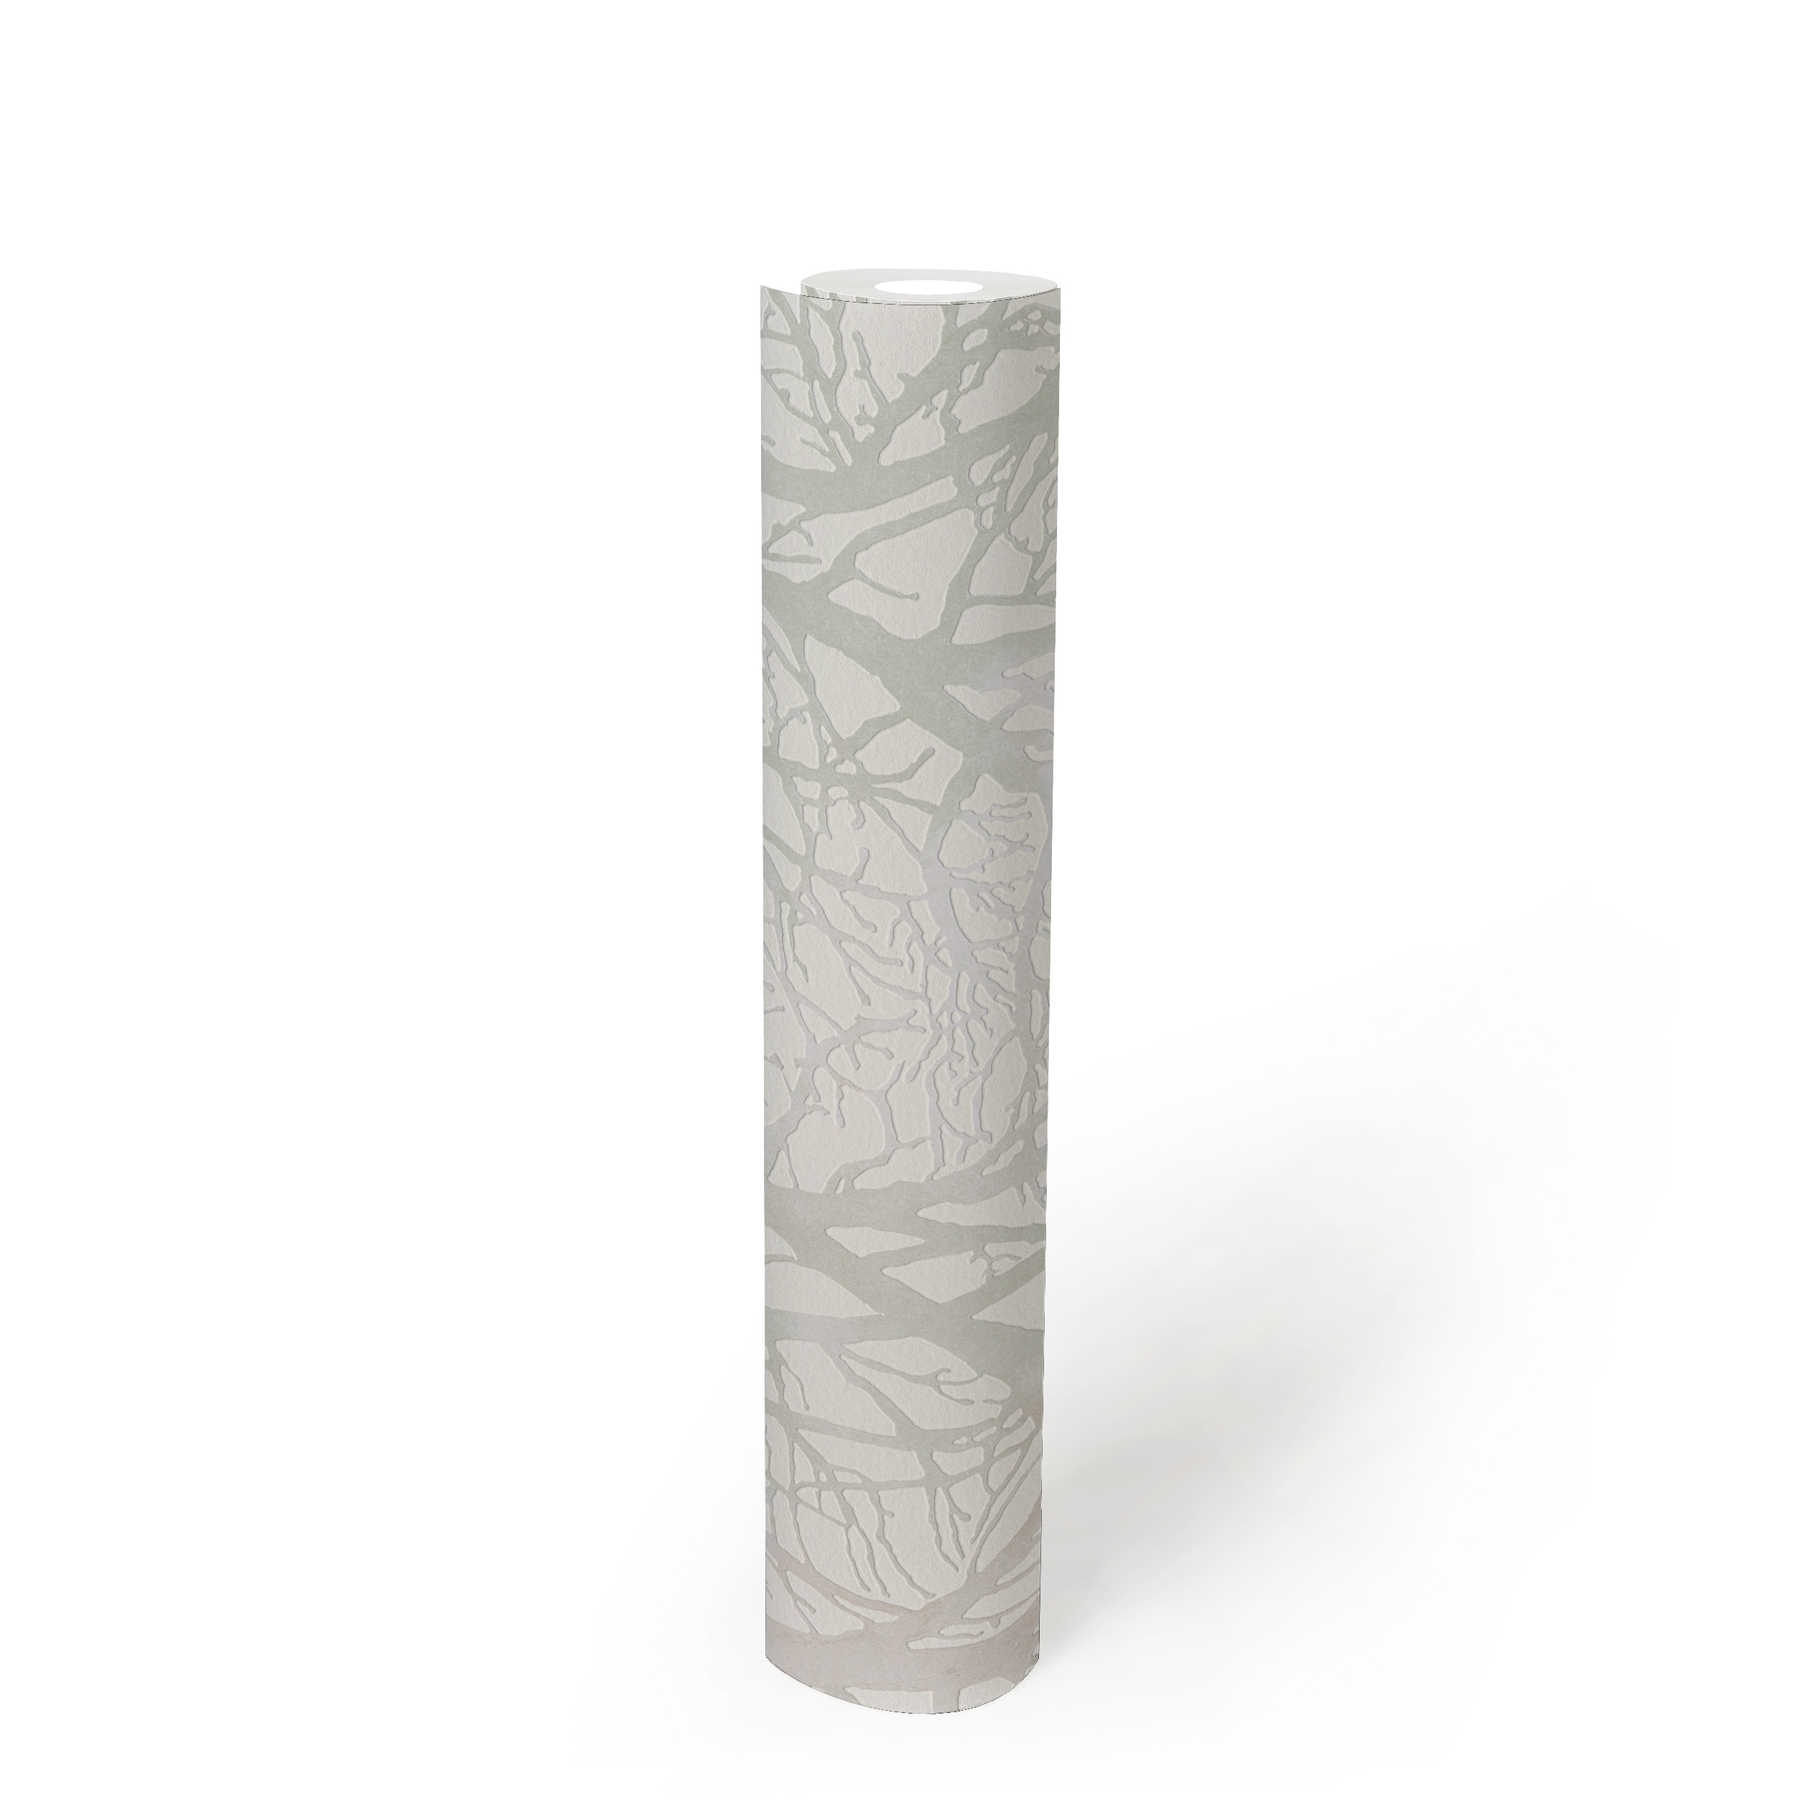             Silbergraue Tapete mit Baum-Motiv und Metallic-Effekt – Weiß, Grün, Silber
        